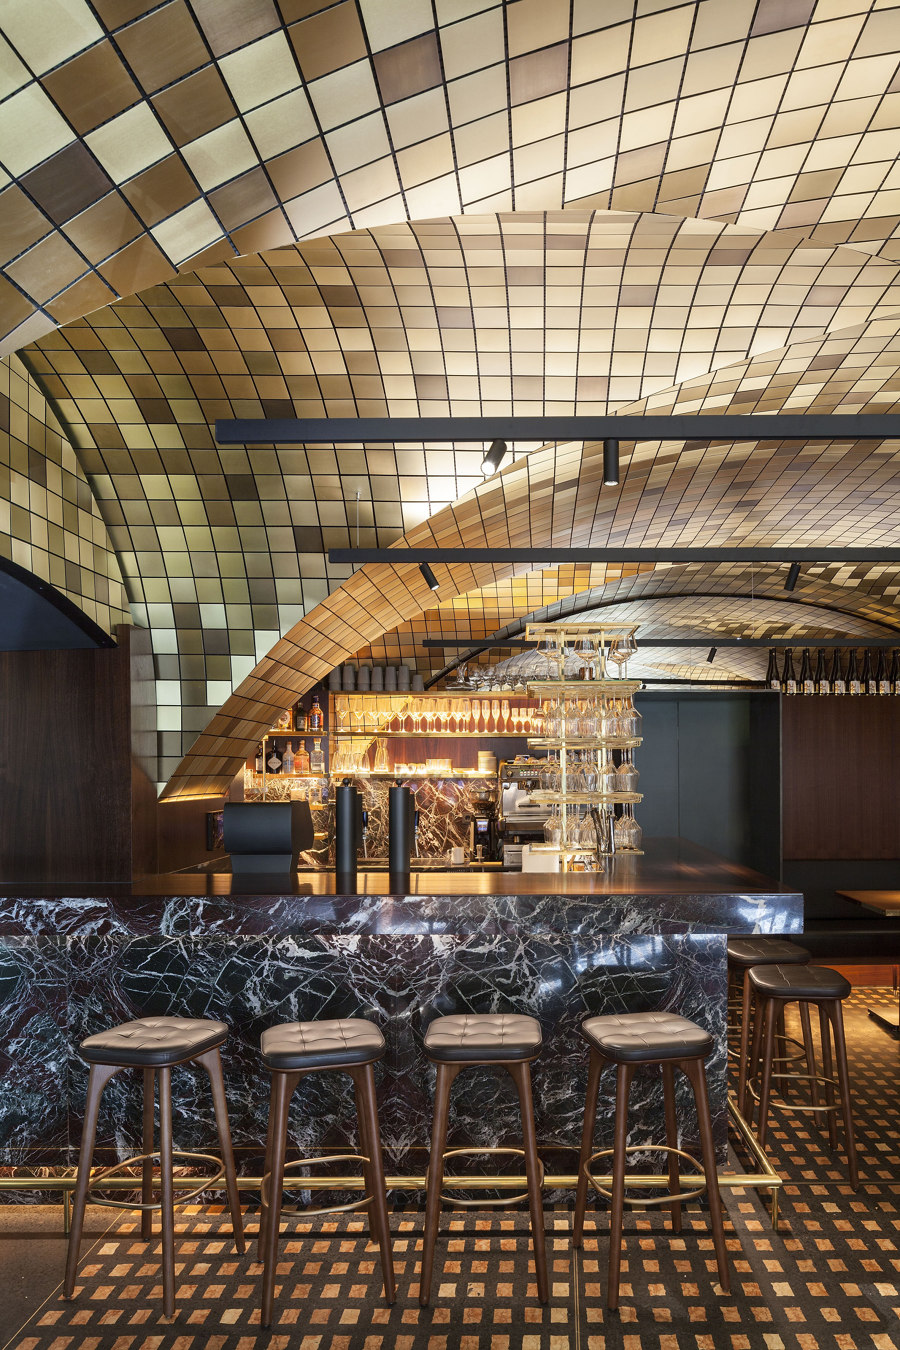 Koller + Koller am Waagplatz Restaurant de BEHF Architects | Diseño de restaurantes